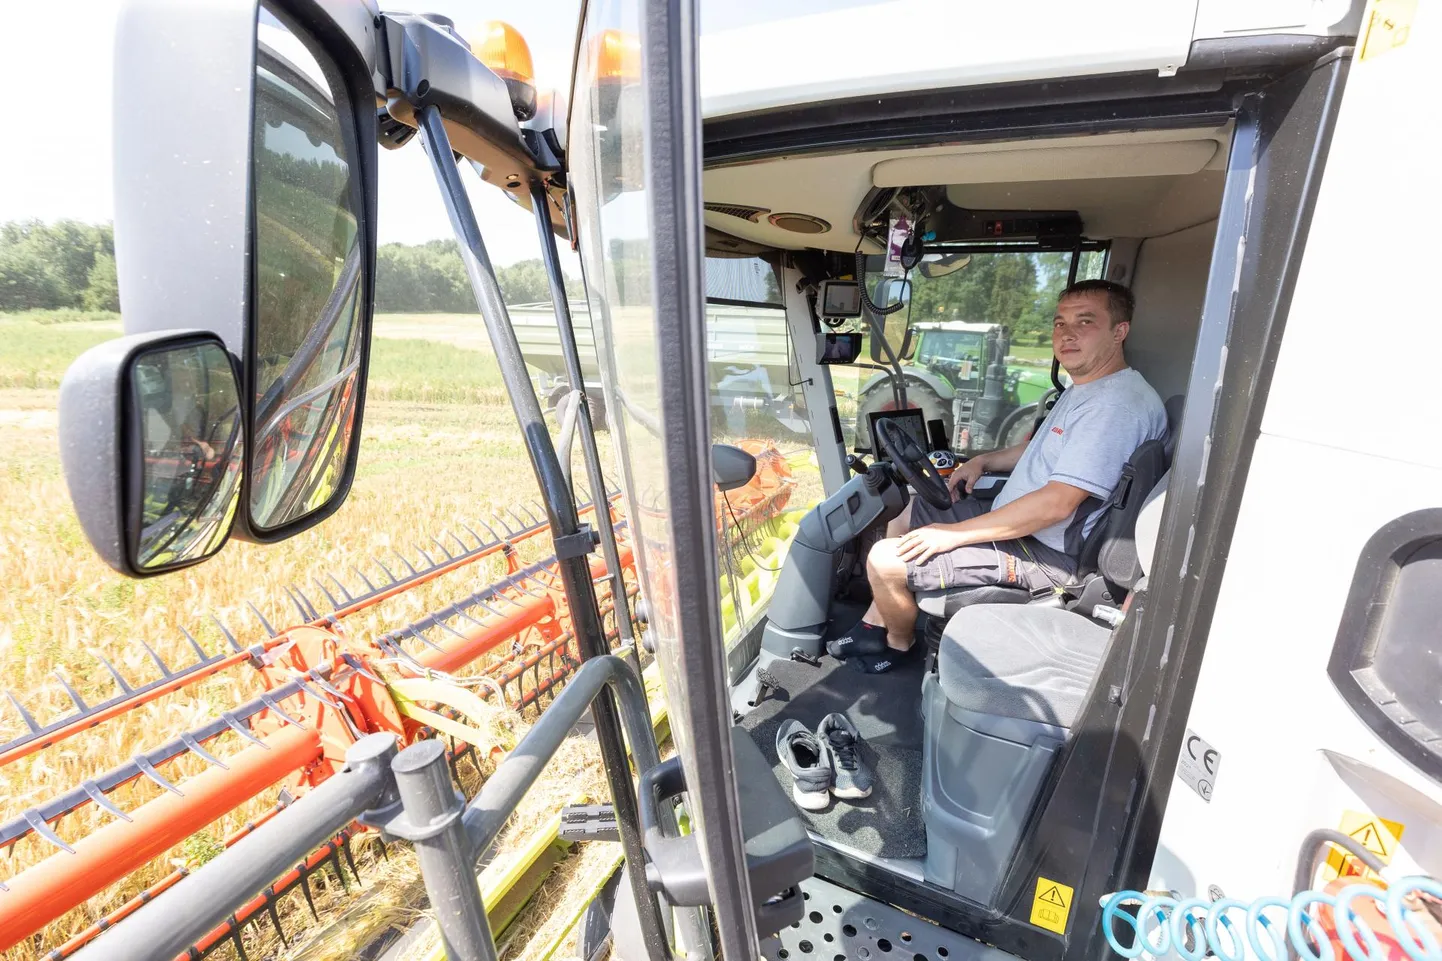 Eesti ühe suurima põllumajandusettevõtte Estonia OÜ põldudel käib viljakoristus juba mitu päeva. Neljapäeval lõigati taliotra Oisus, ühe kombaini roolis oli Mario Piirits.